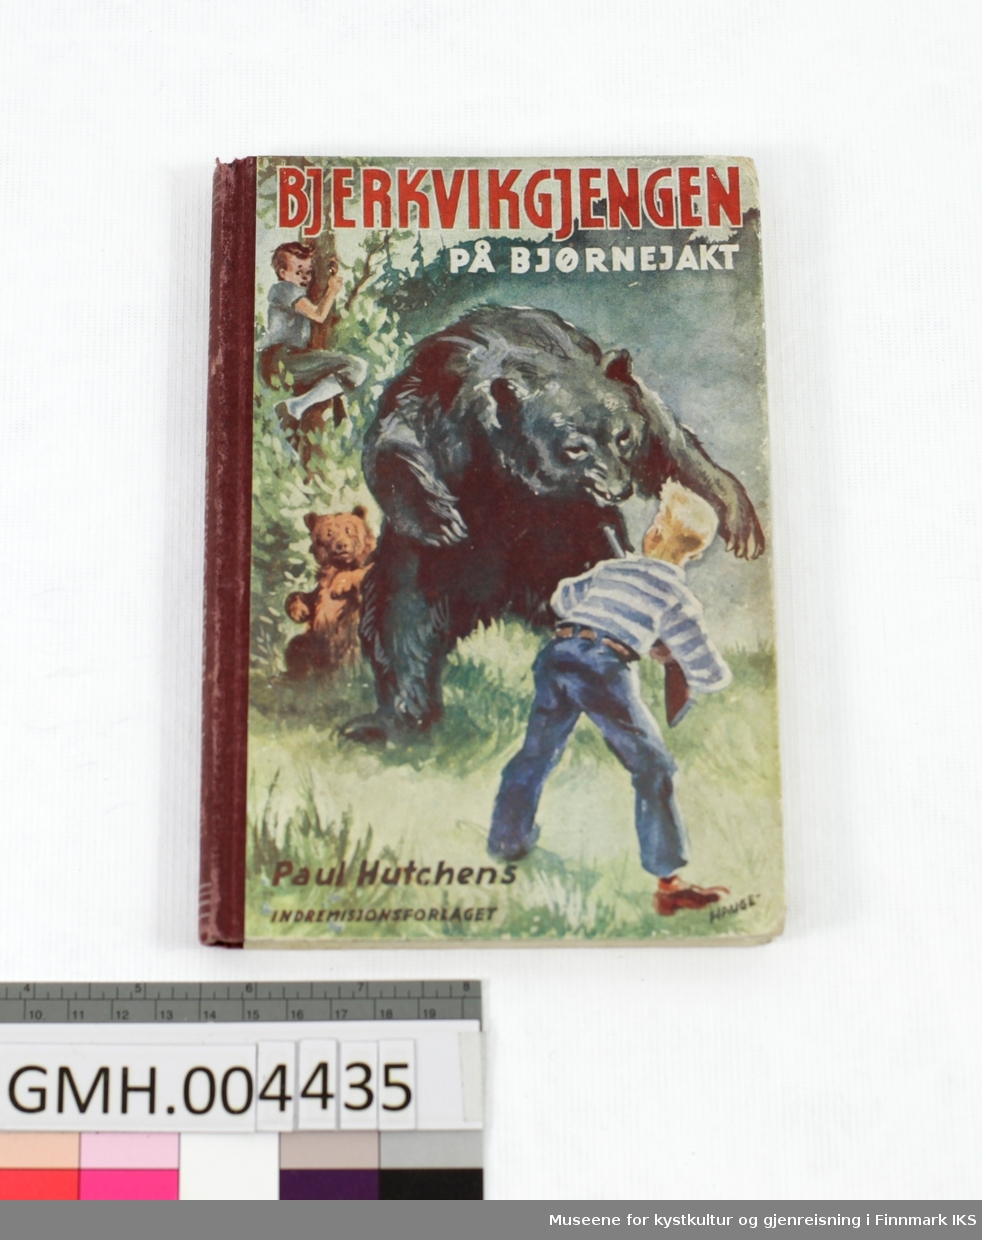 Bok: Paul Hutchens. Bjerkvikgjengen på bjørnejakt. Indremisjonsforlaget, Oslo, 1948.